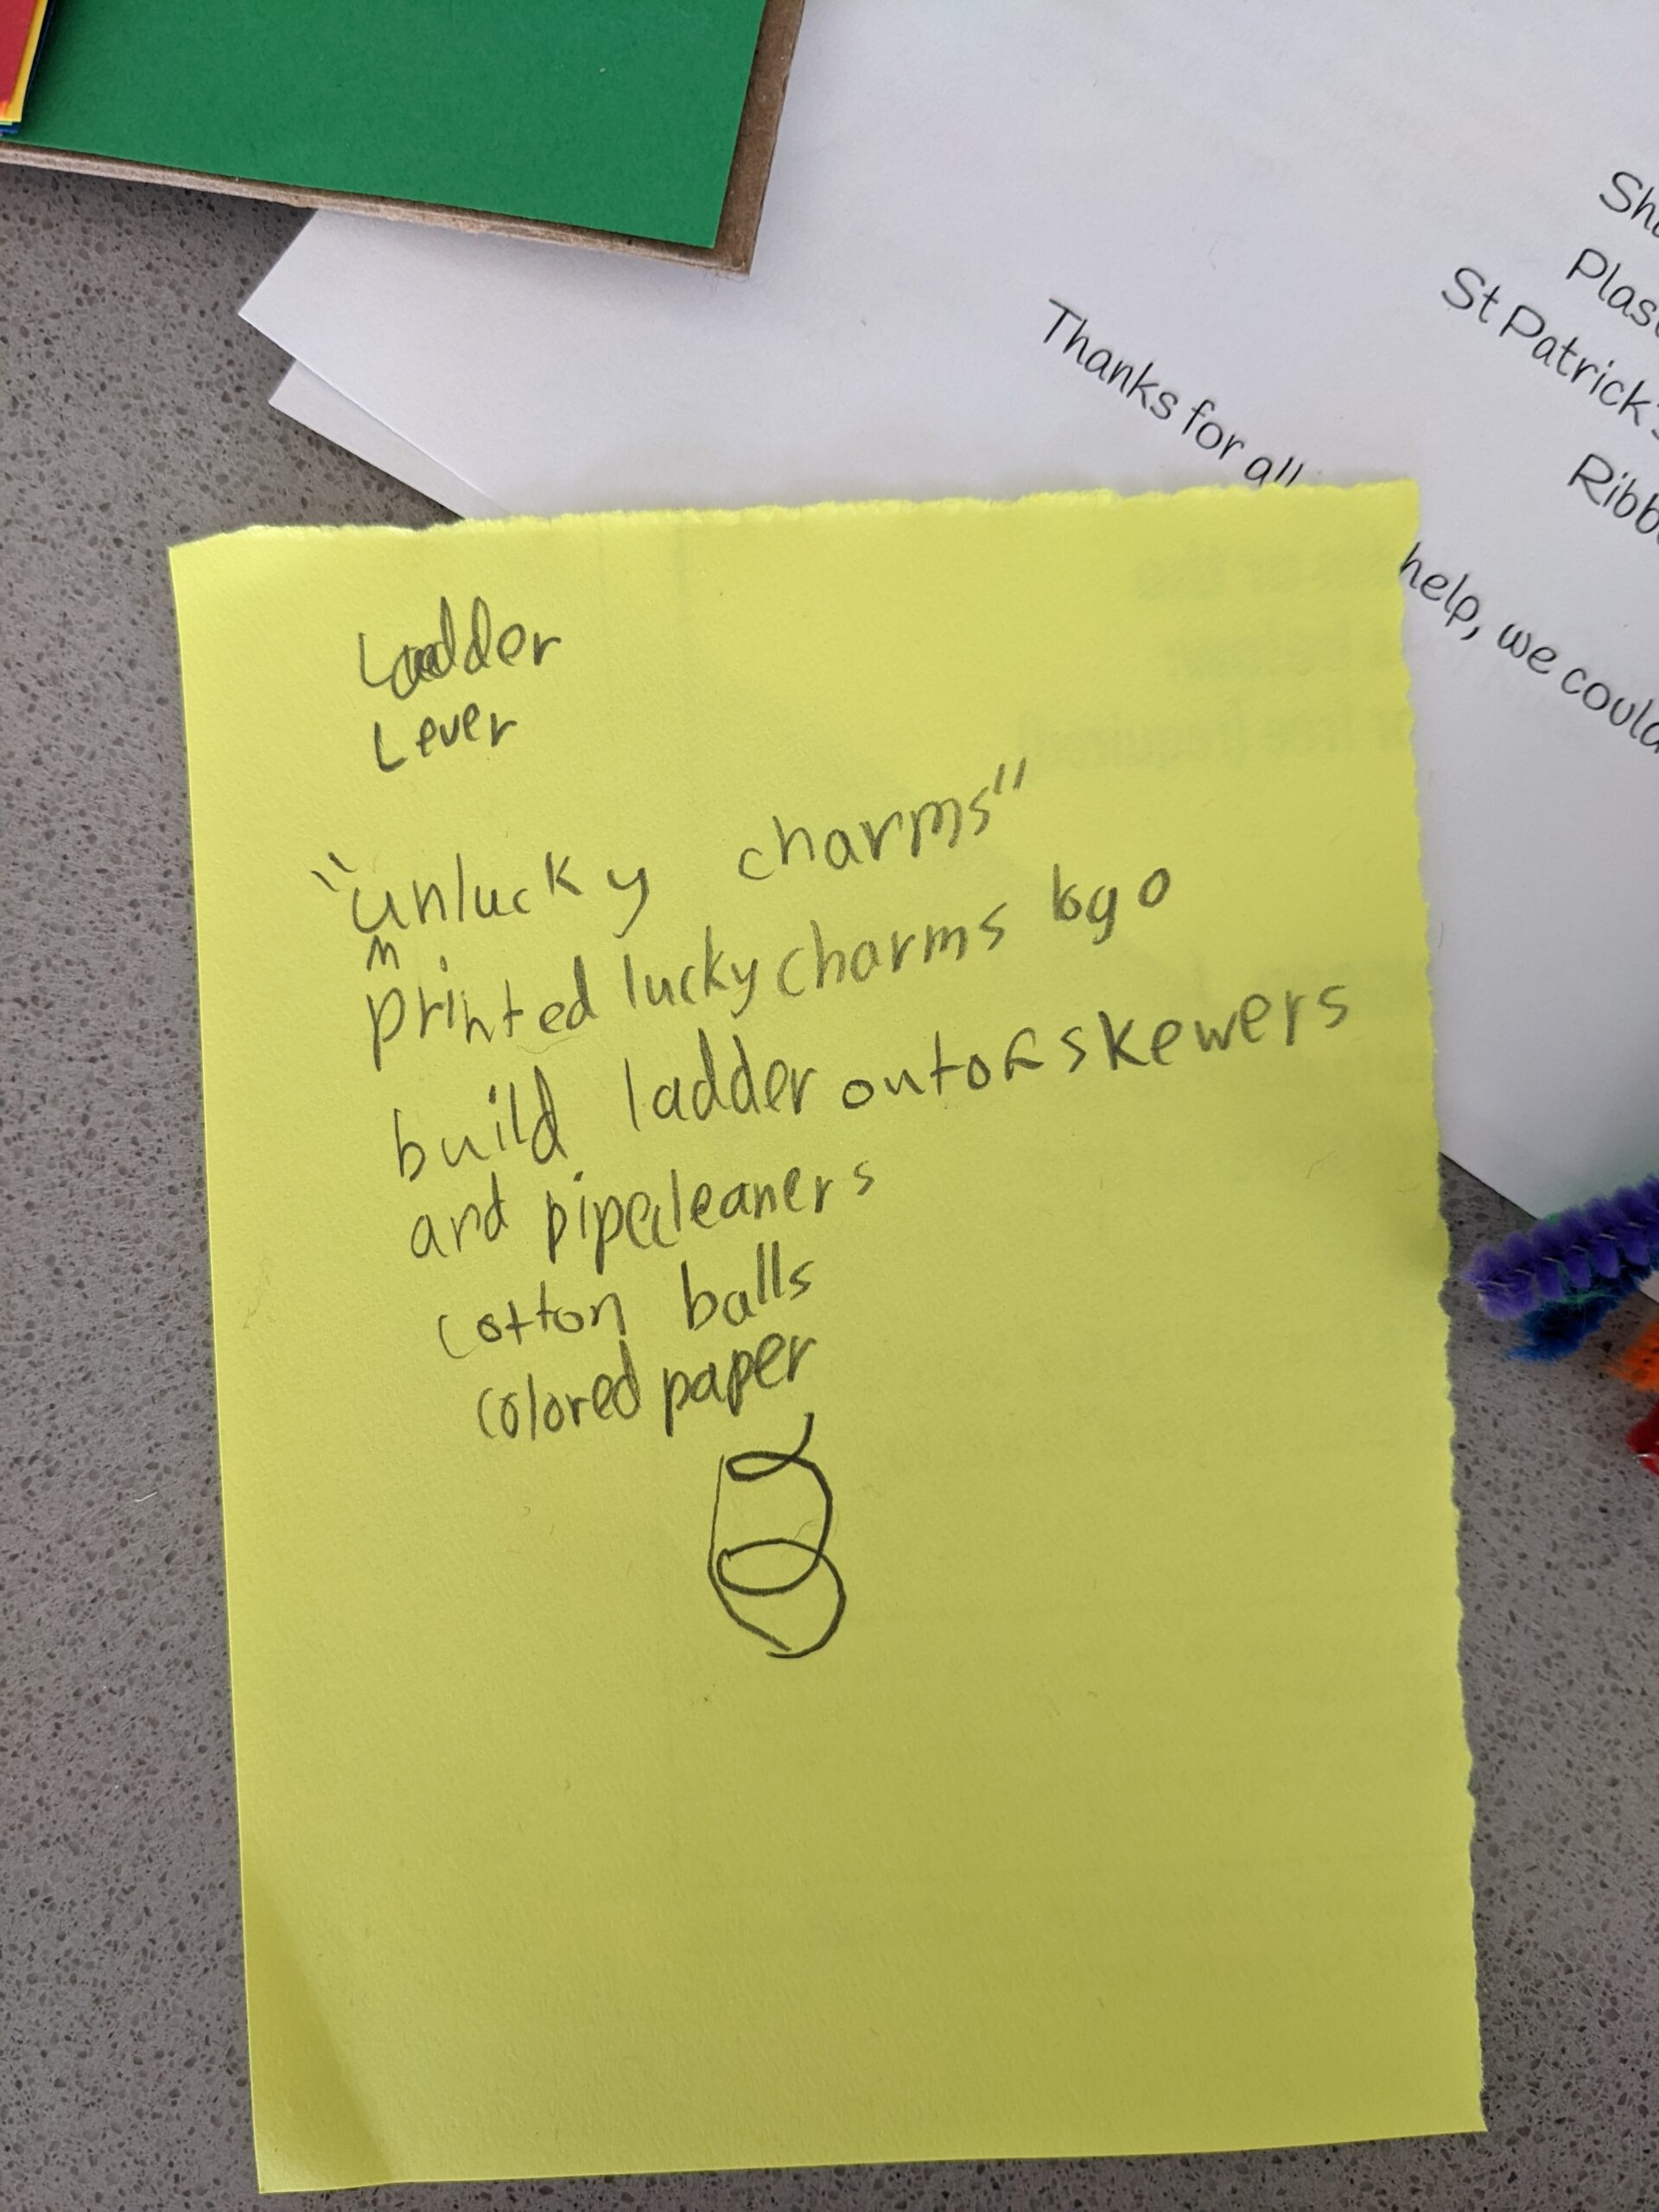 My kid's written plan for making a leprechaun trap